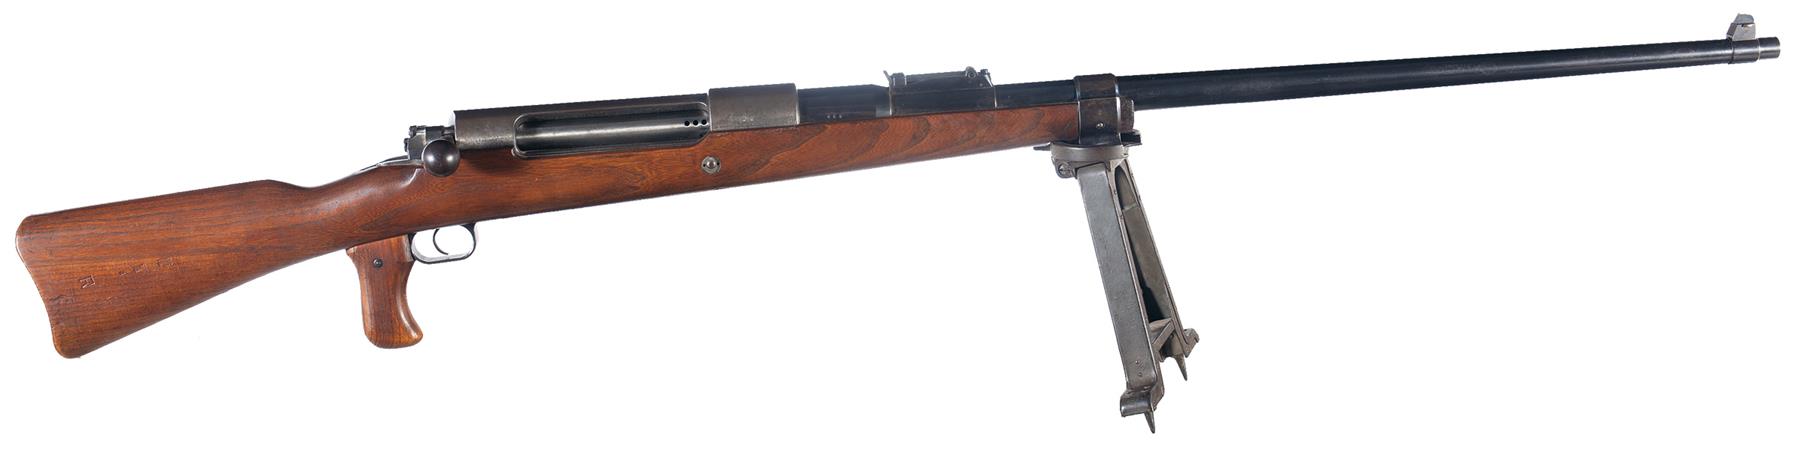 Mauser 1918 T Gewehr Gun Wiki Fandom Powered By Wikia